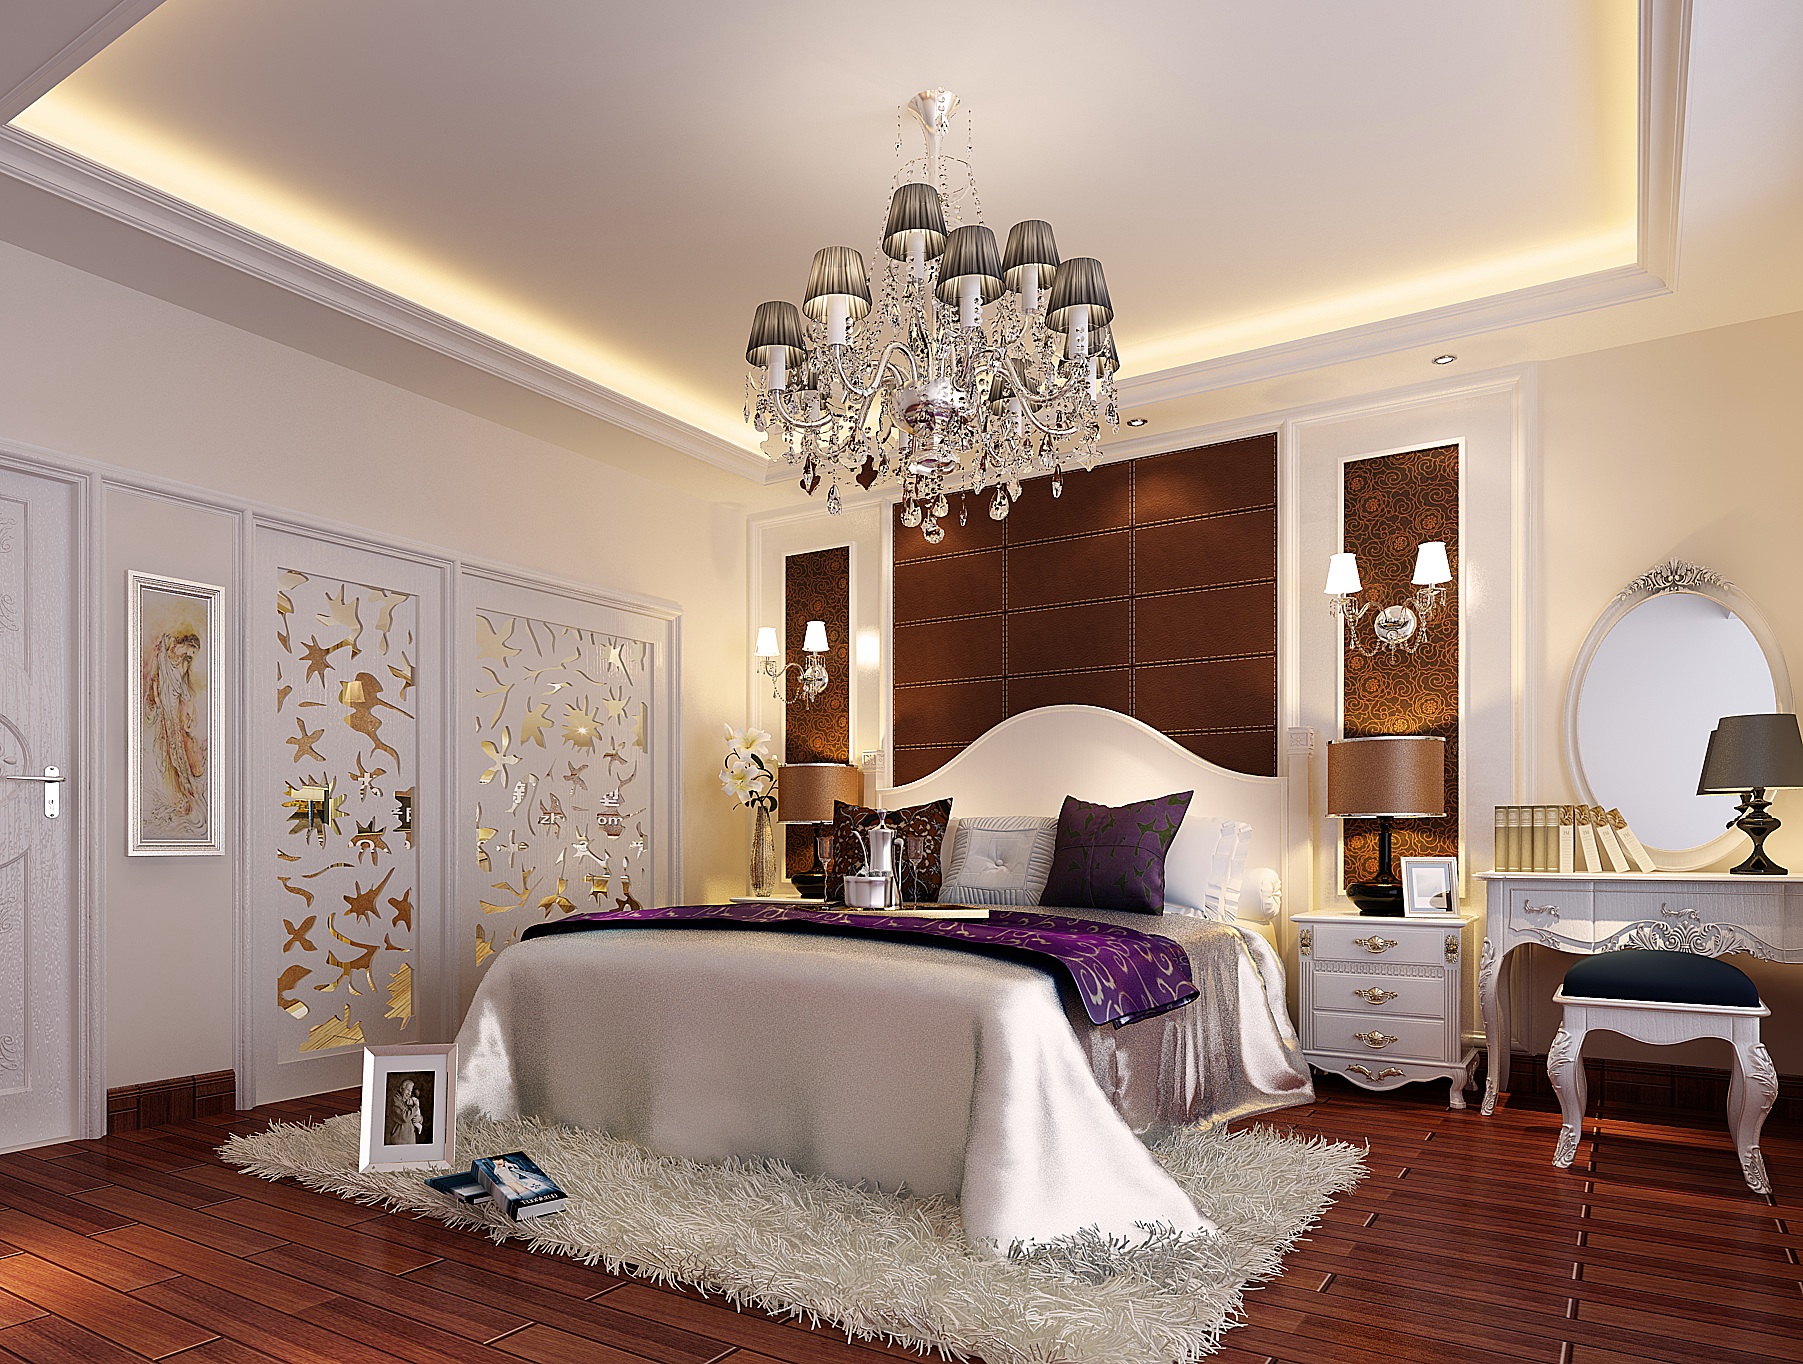 凤凰城凤锦 简欧 四居室 卧室图片来自传承正能量在凤凰城200平简欧的白色温馨的家的分享